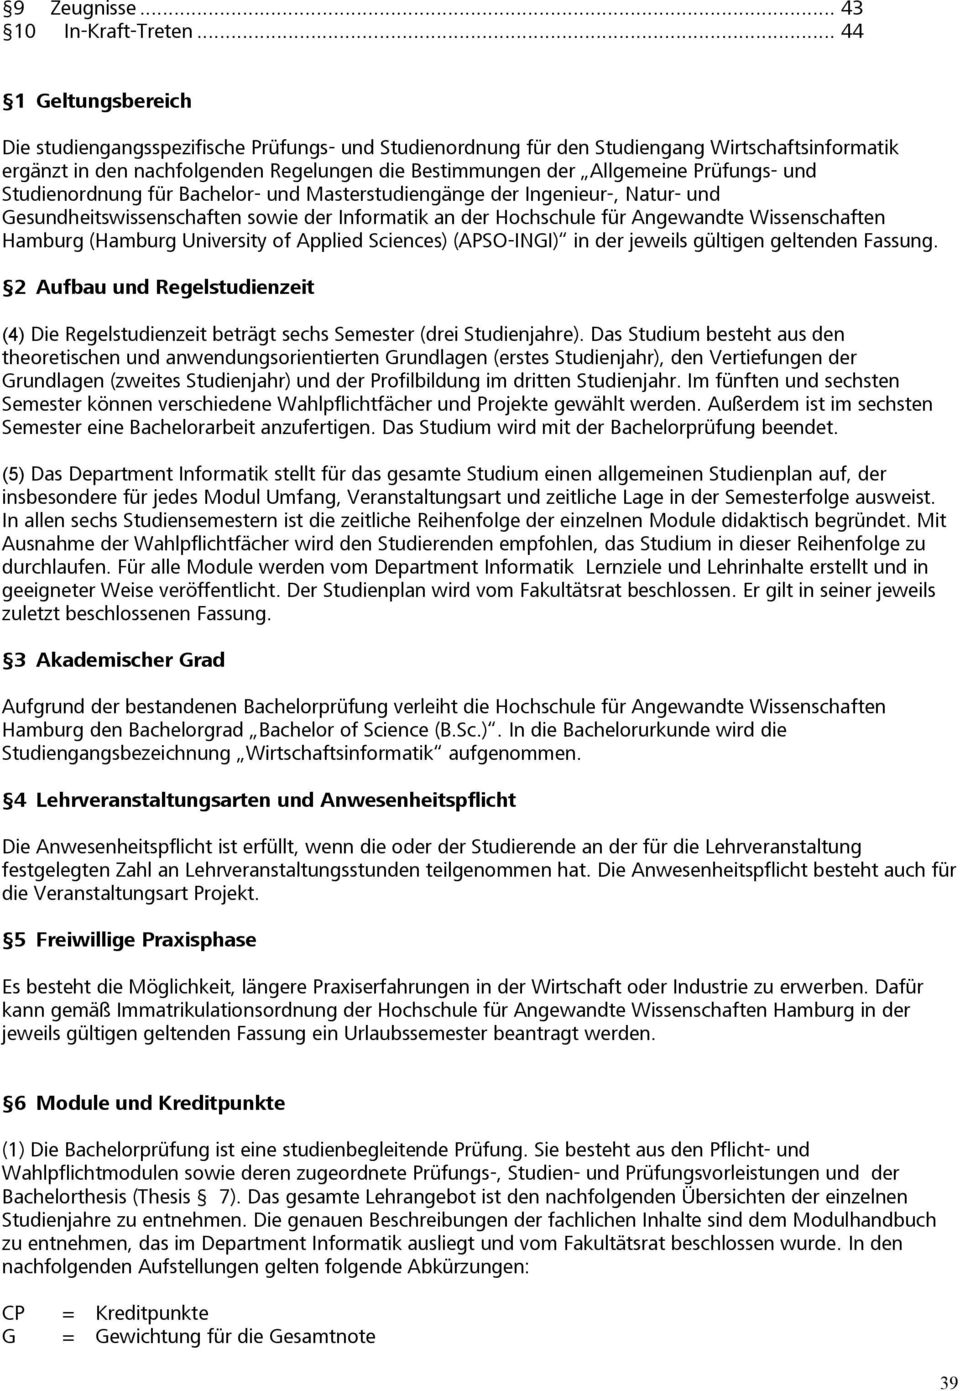 Prüfungs- und Studienordnung für Bachelor- und Masterstudiengänge der Ingenieur-, Natur- und Gesundheitswissenschaften sowie der Informatik an der Hochschule für Angewandte Wissenschaften Hamburg